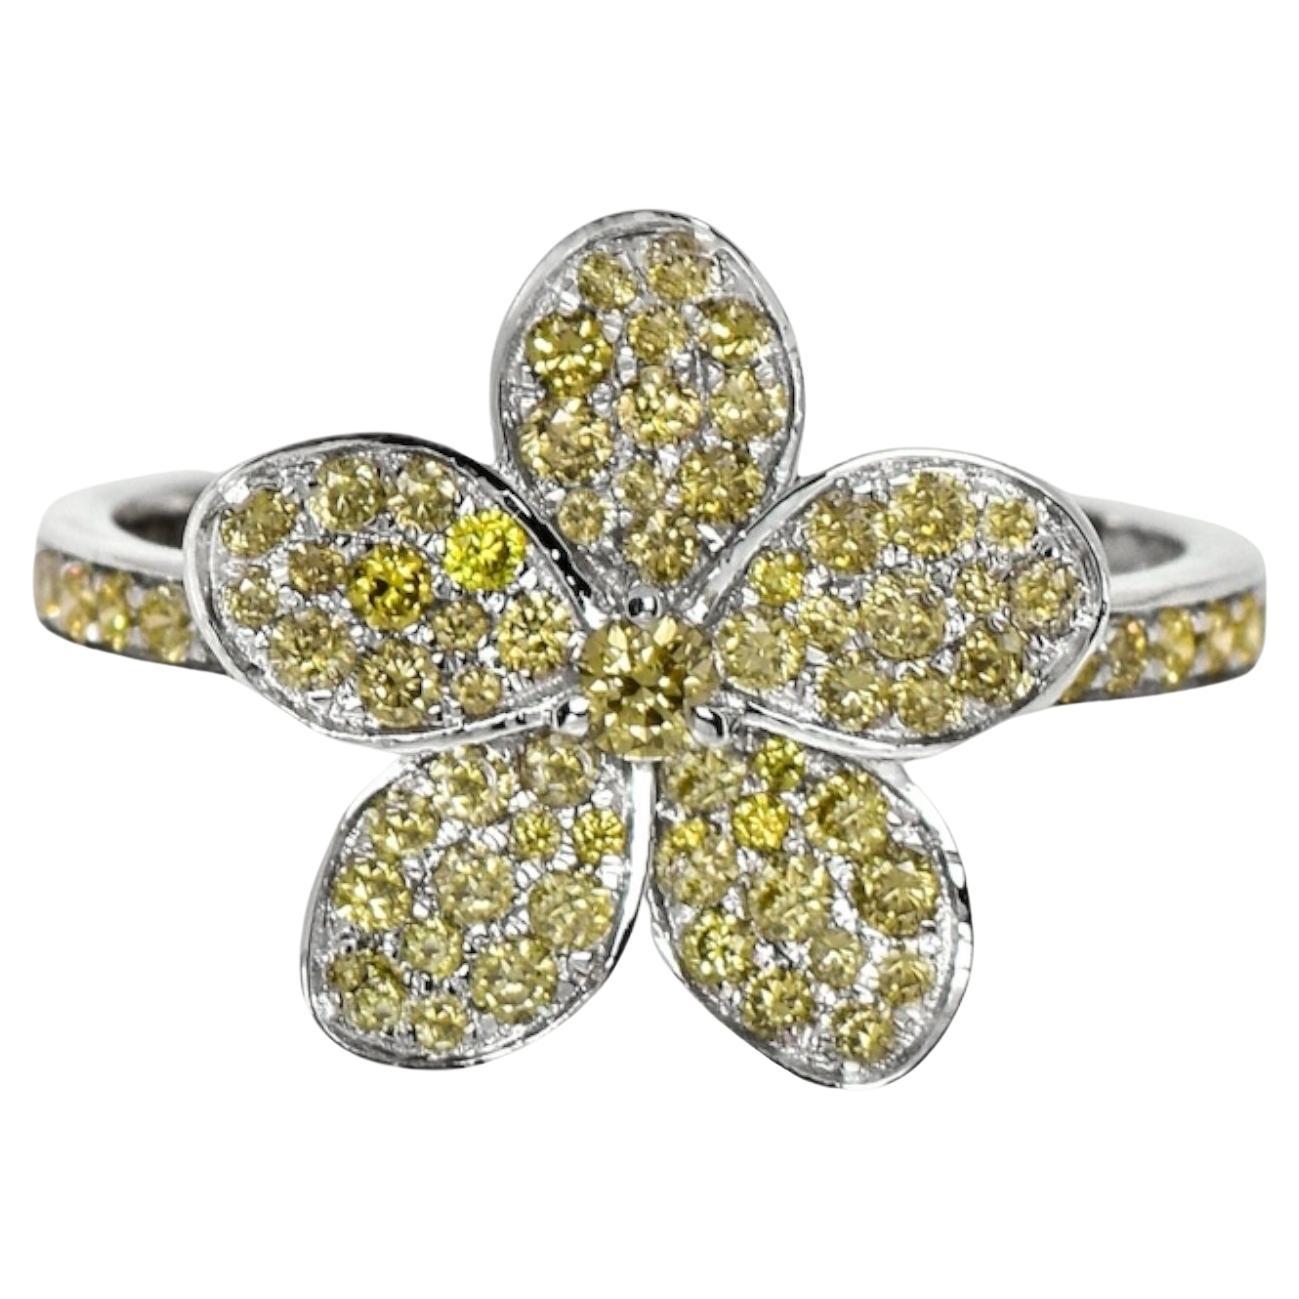 IGI 14K 0.66 ct Natural Greenish Yellow Diamond Flower Design Engagement Ring